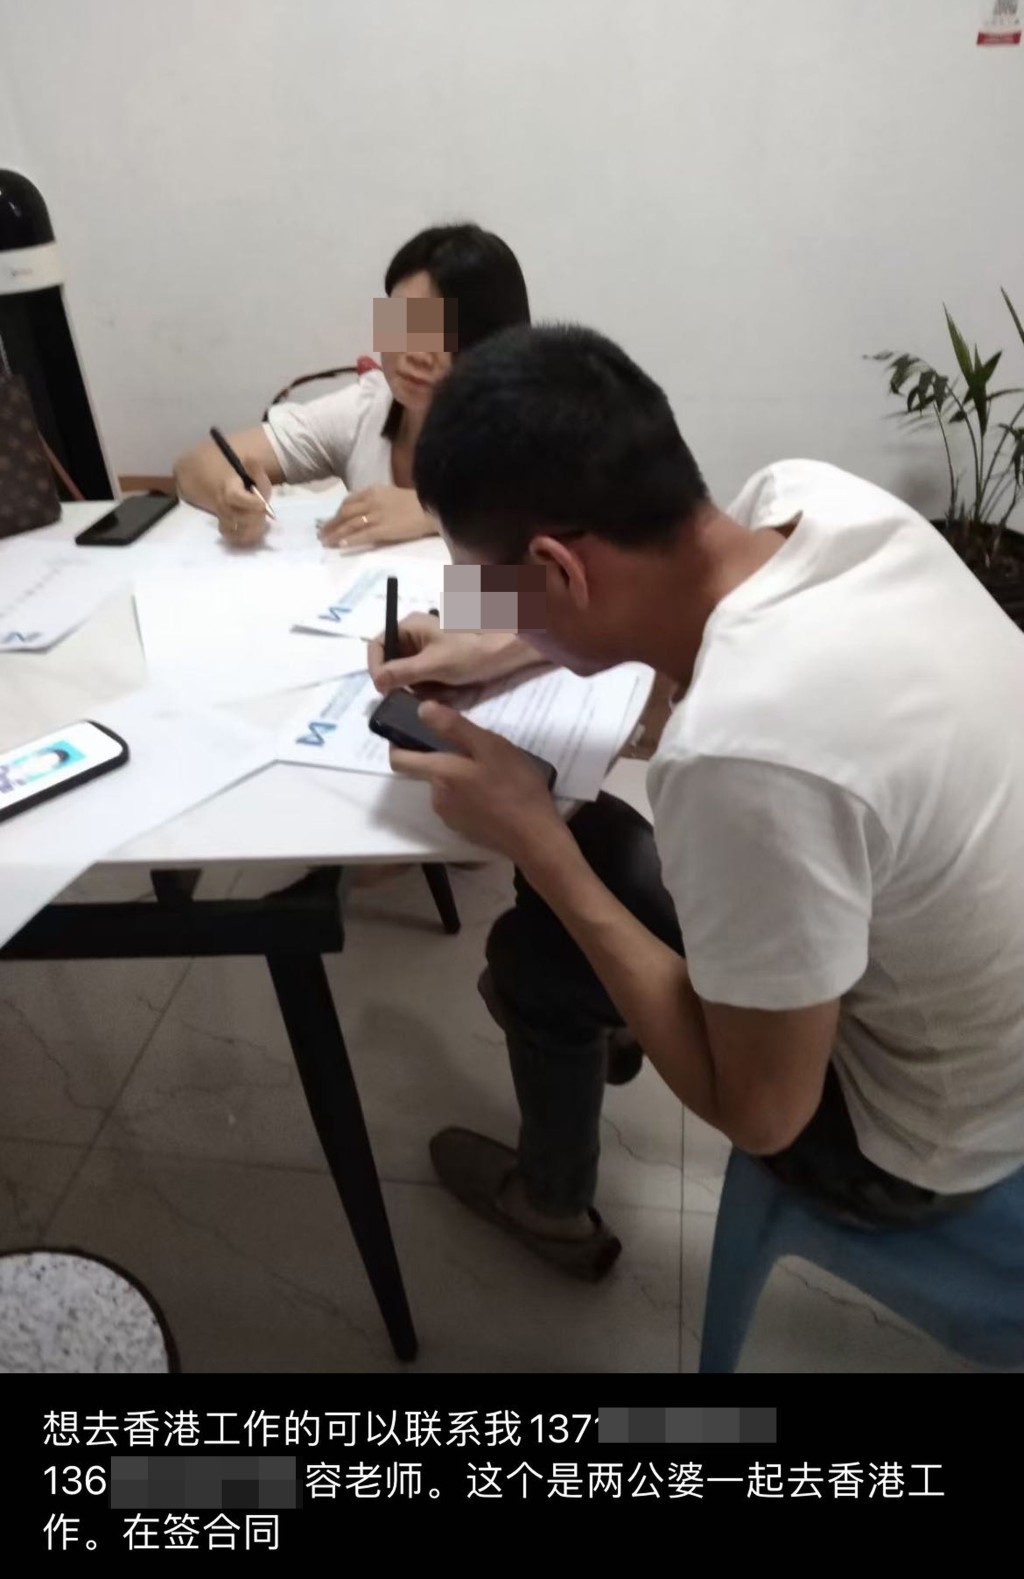 內地中介發放一張內地夫婦簽合同的相片，稱他們準備前往香港工作。